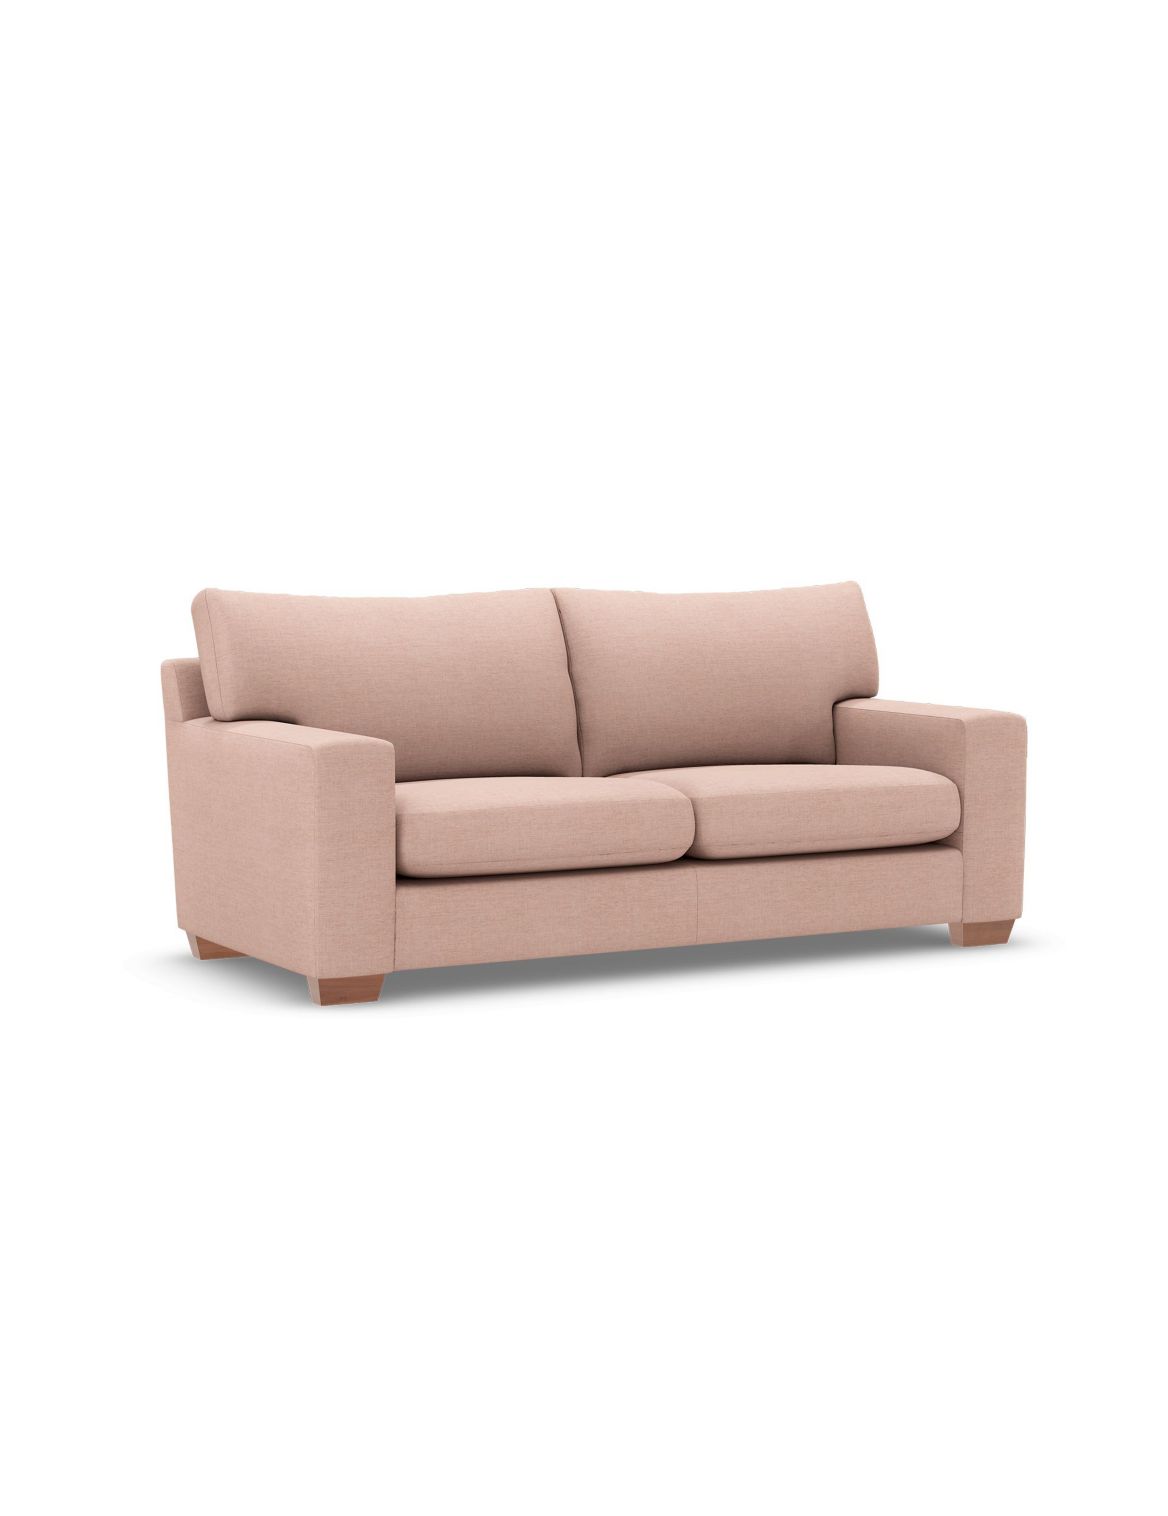 Alfie Medium Sofa pink